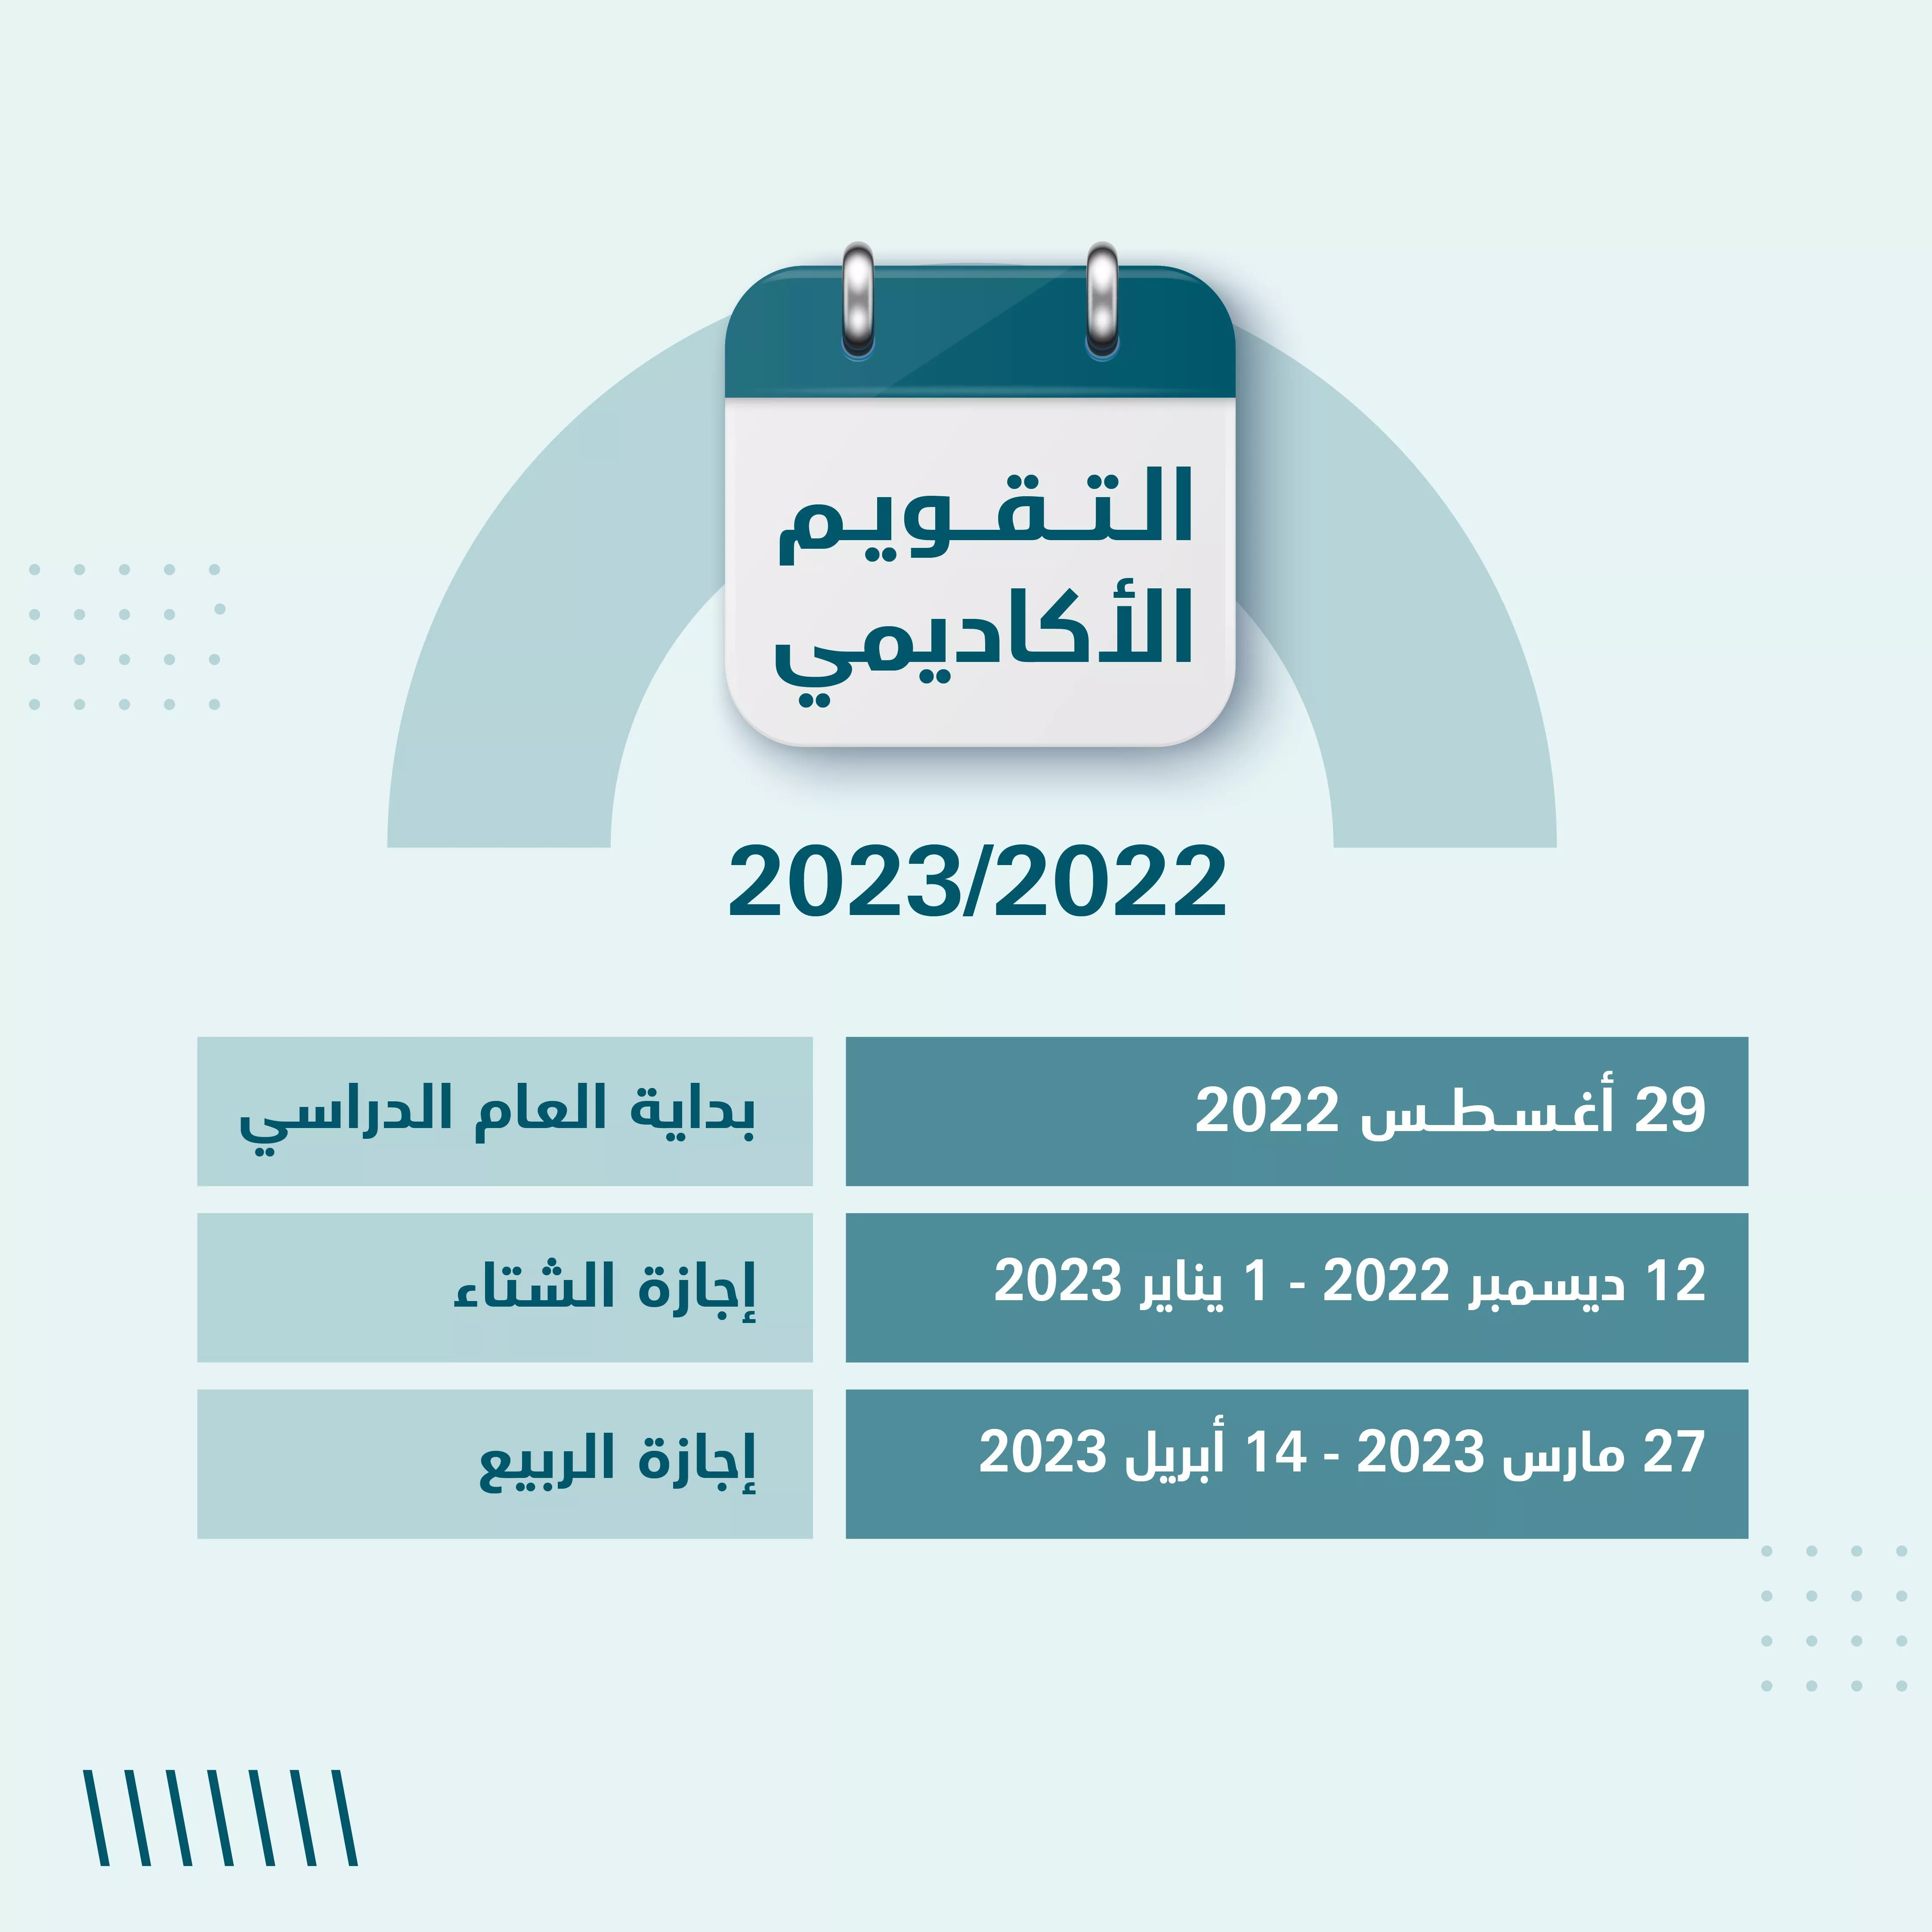 هذا هو موعد عودة المدارس في الامارات للعام الدراسي 2022 - 2023